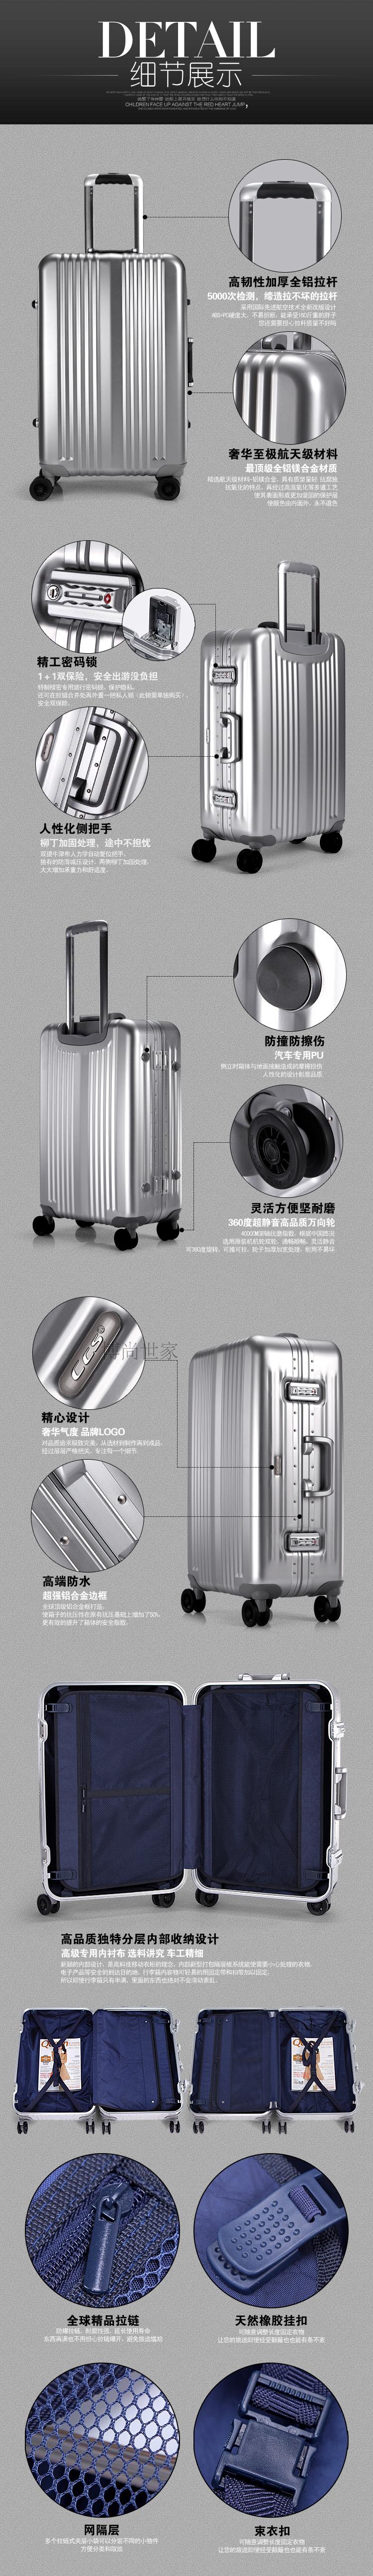 美國飛機品牌 美國品牌CCS鋁鎂合金萬向輪拉桿箱旅行箱行李箱登機箱包特價 美國包包